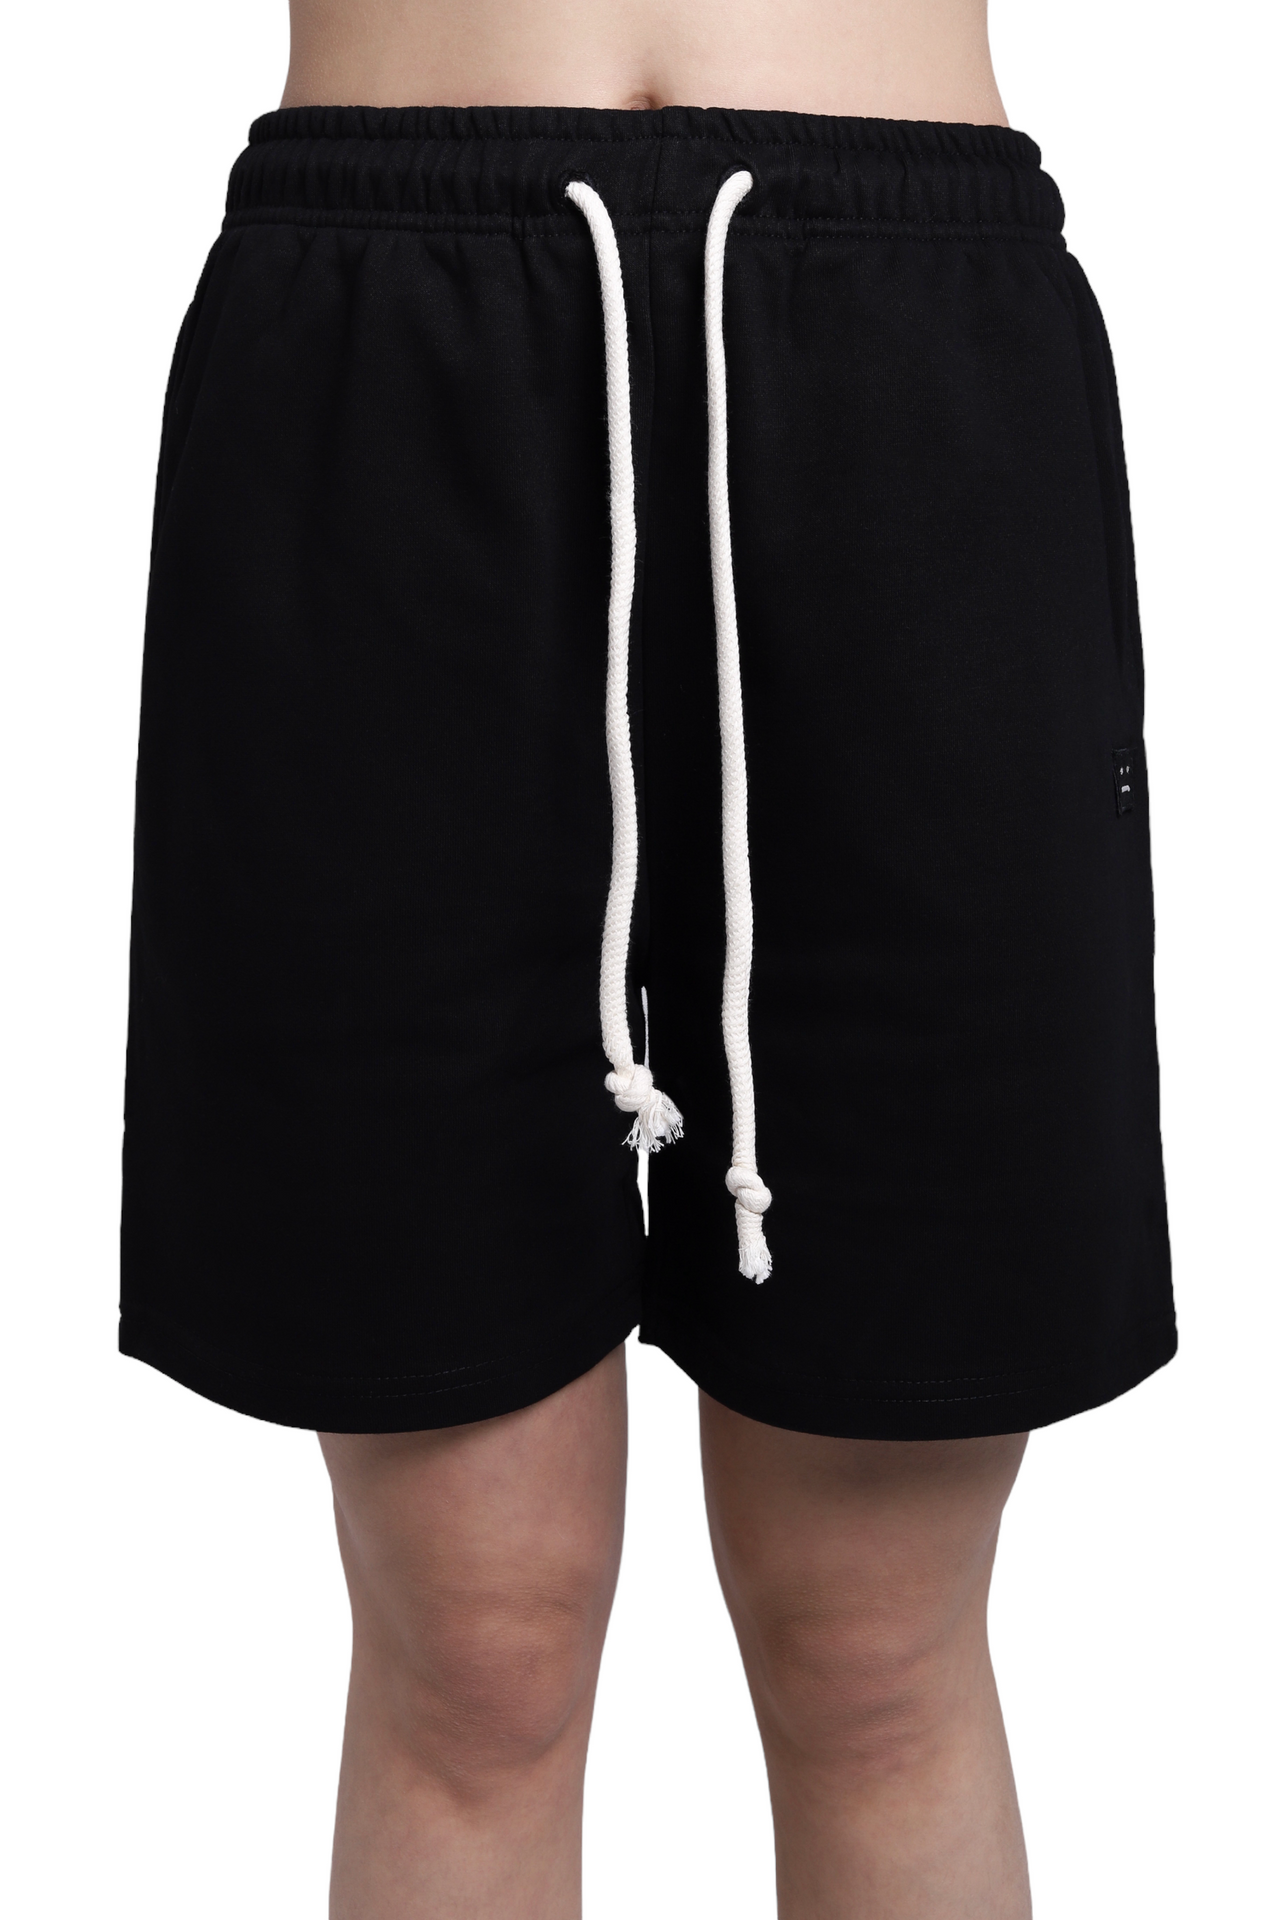 Acne Studios Fleece Shorts Black